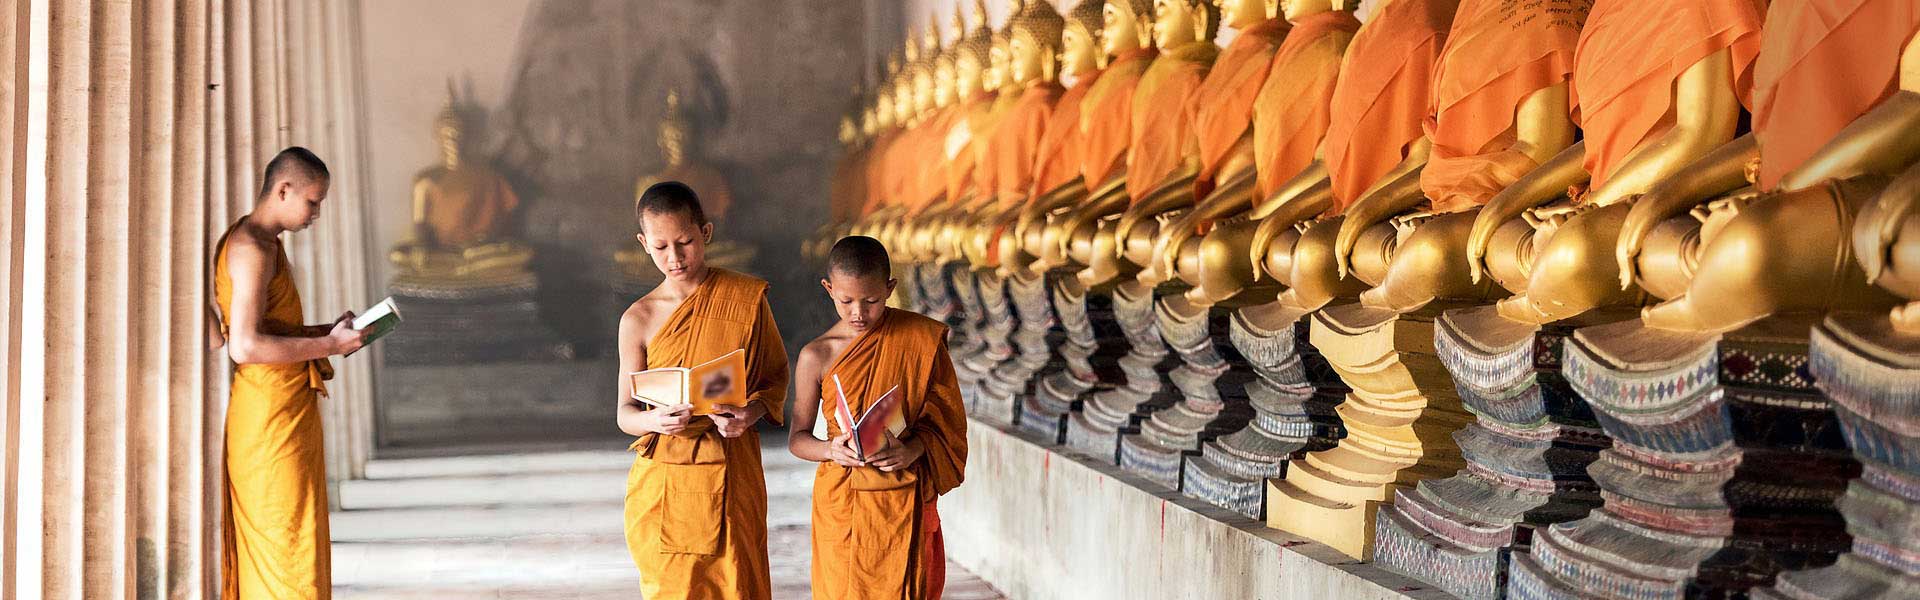 Voyage Indonésie : Jeunes moines bouddhistes